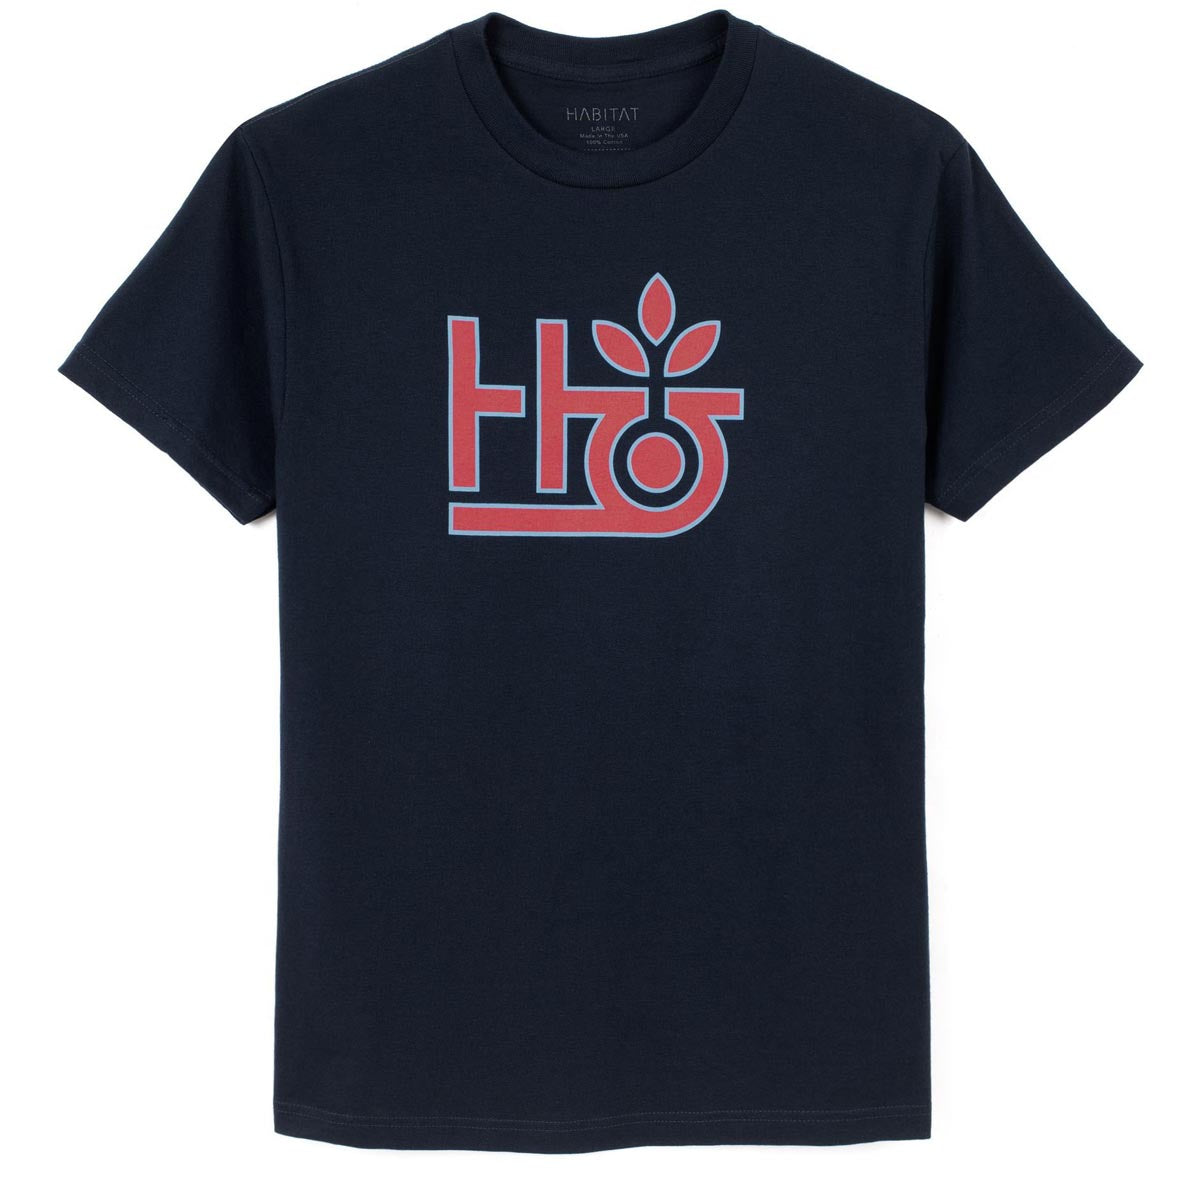 Habitat Pod Logo T-Shirt - Navy image 1